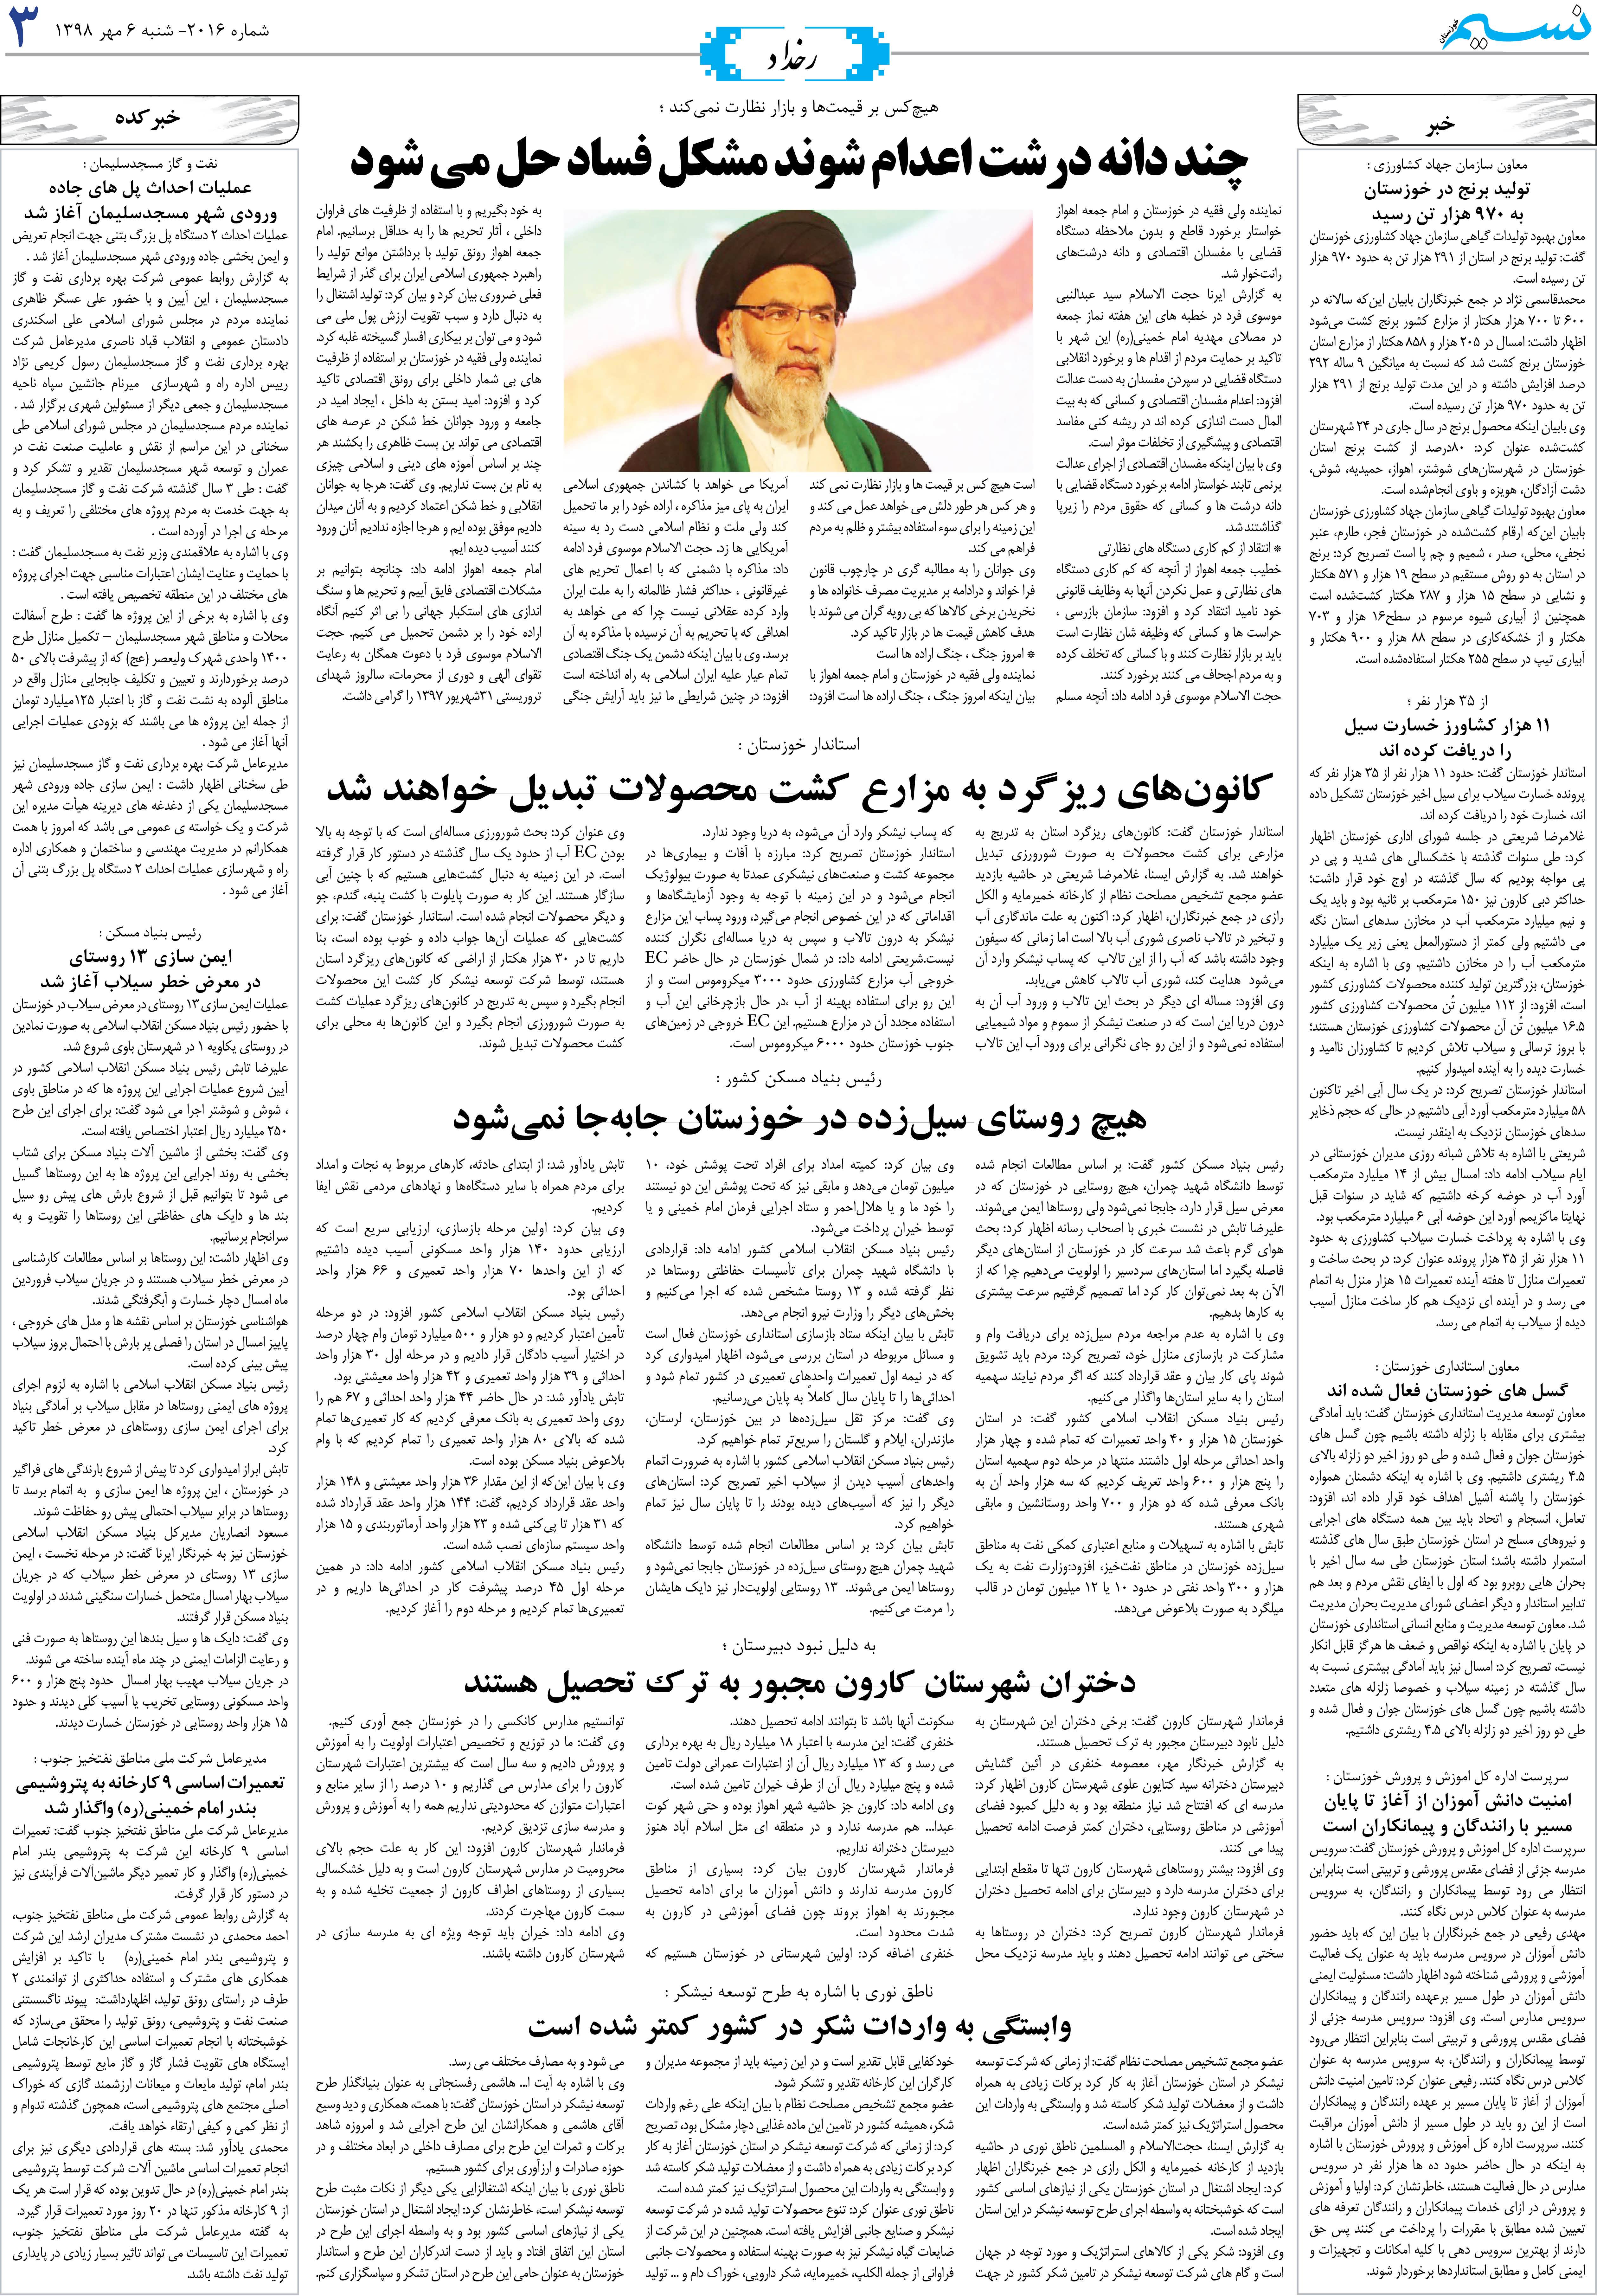 صفحه رخداد روزنامه نسیم شماره 2016